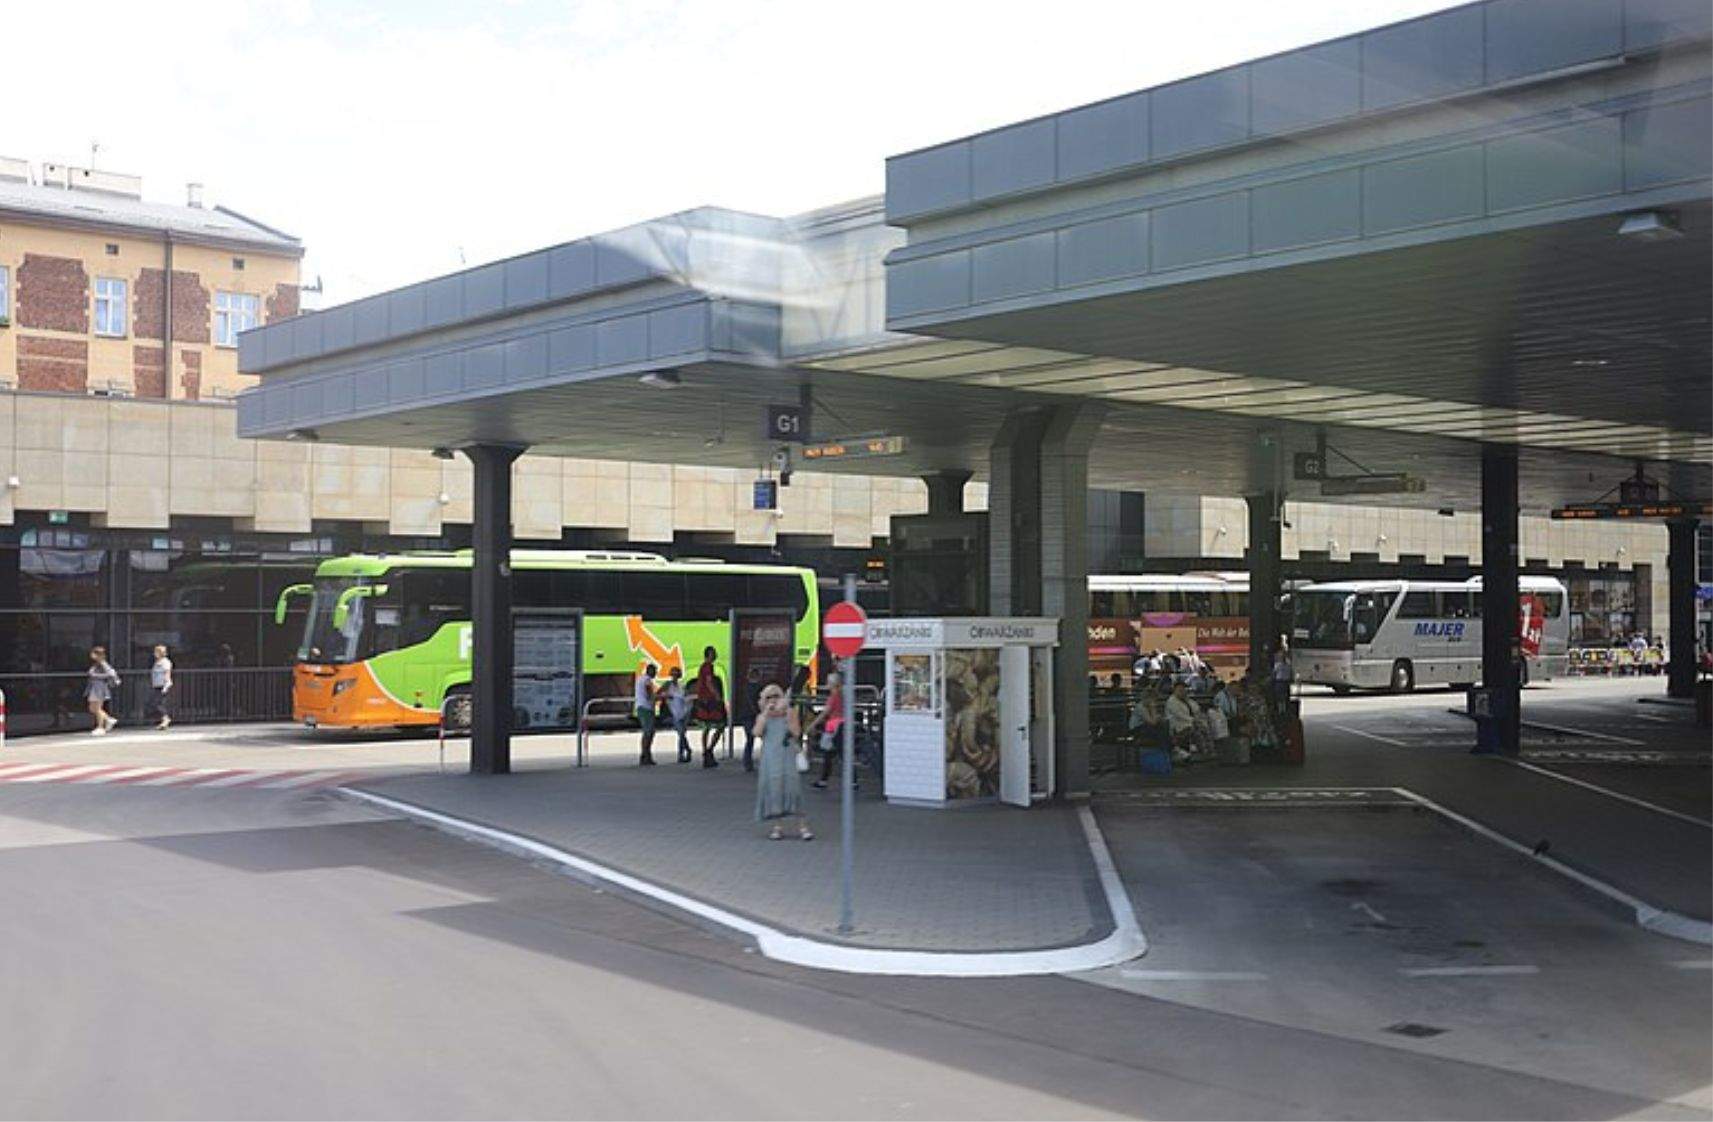 MDA Małopolska Bus Stations S.A. in Krakow 